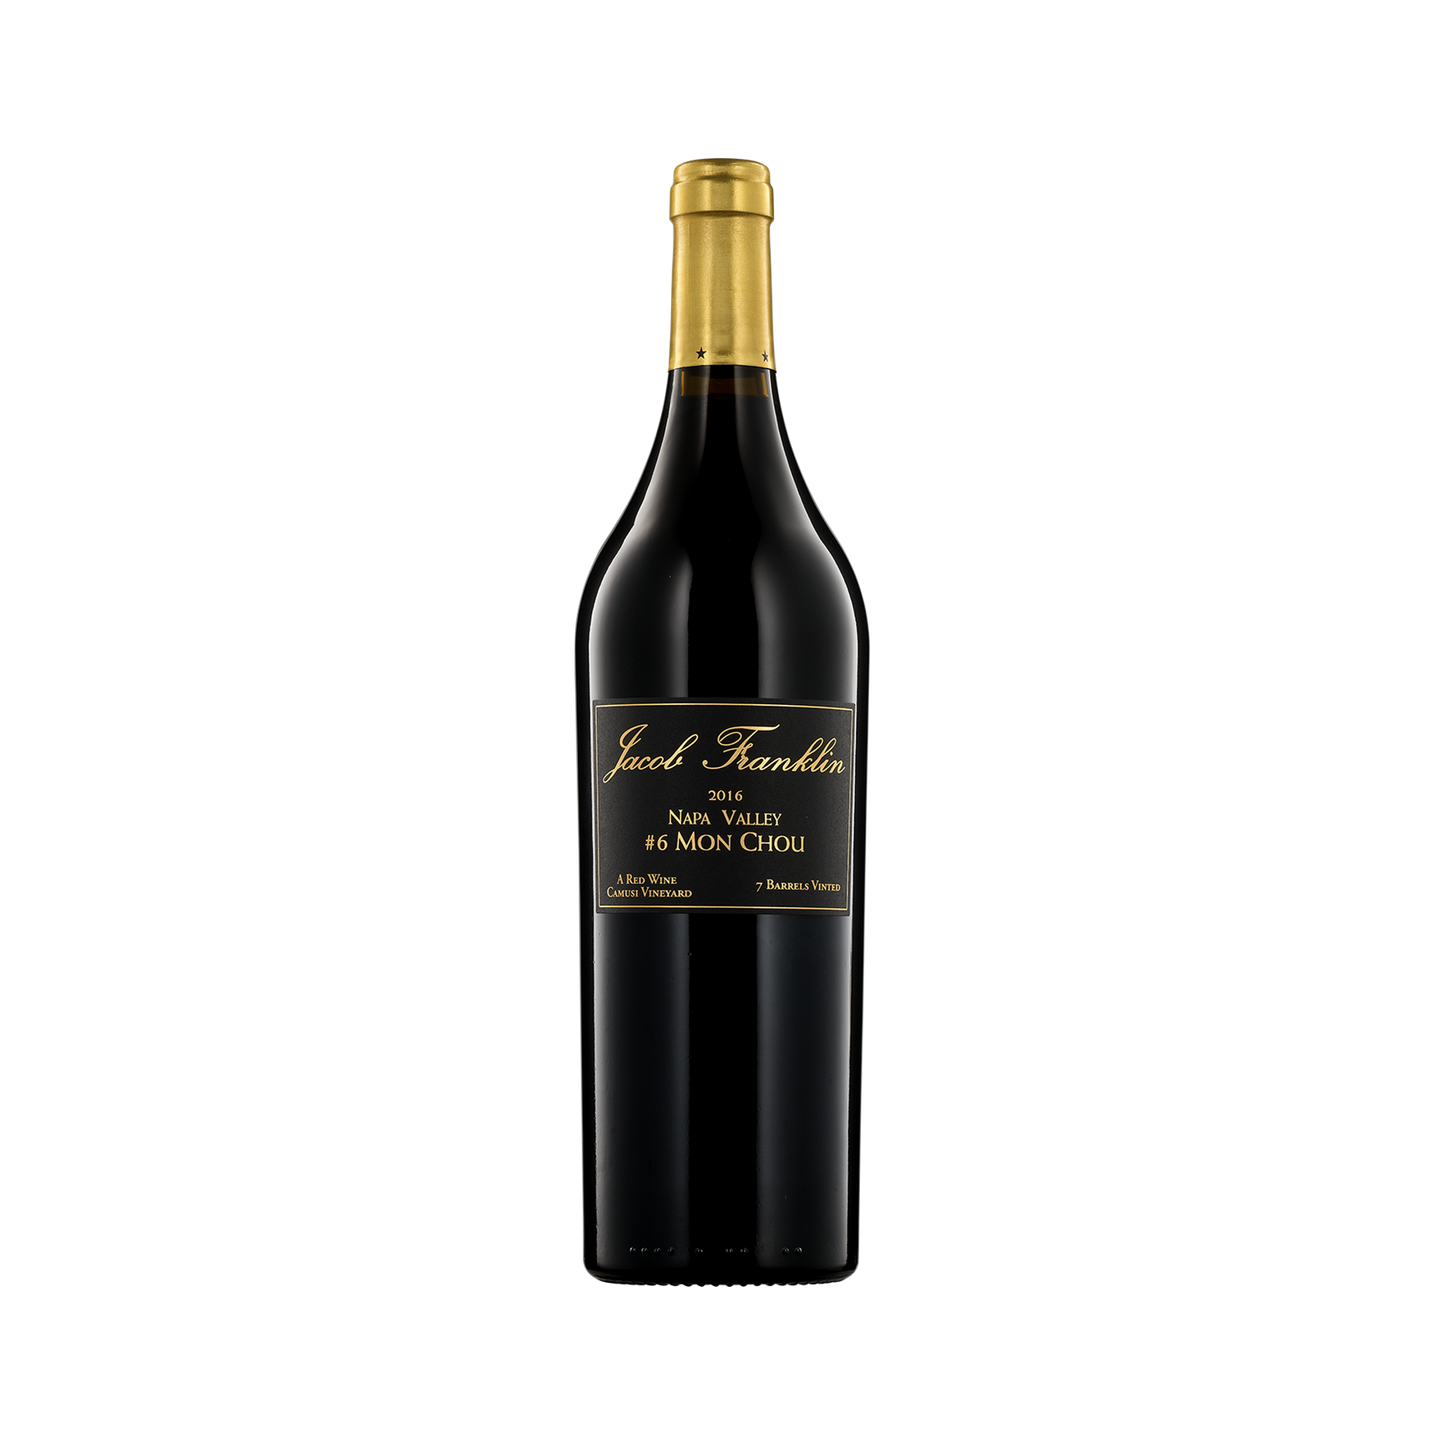 A bottle of Jacob Franklin Wines 2016 Bordeaux Rouge